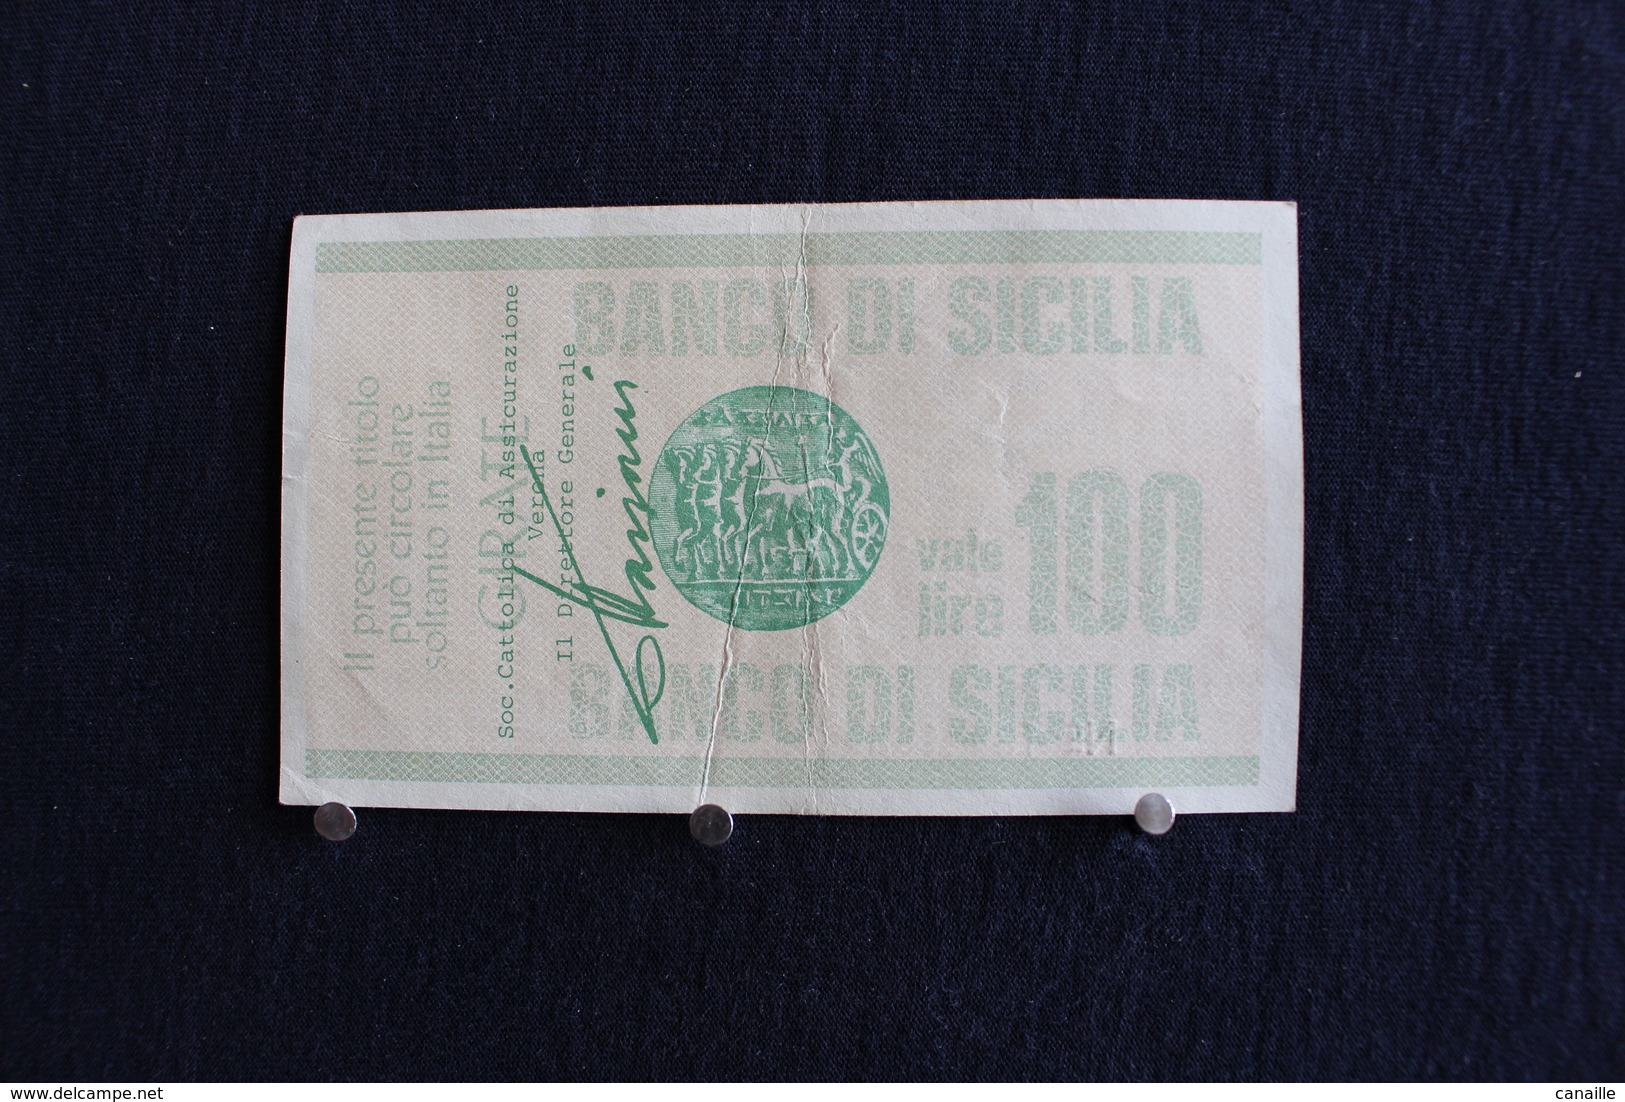 3 / Italie - 1946 : Royaume / Biglietti - Il Banco Di Sicilia, 25.10.1976 - 100 Lire - Cento Lire - - 100 Lire